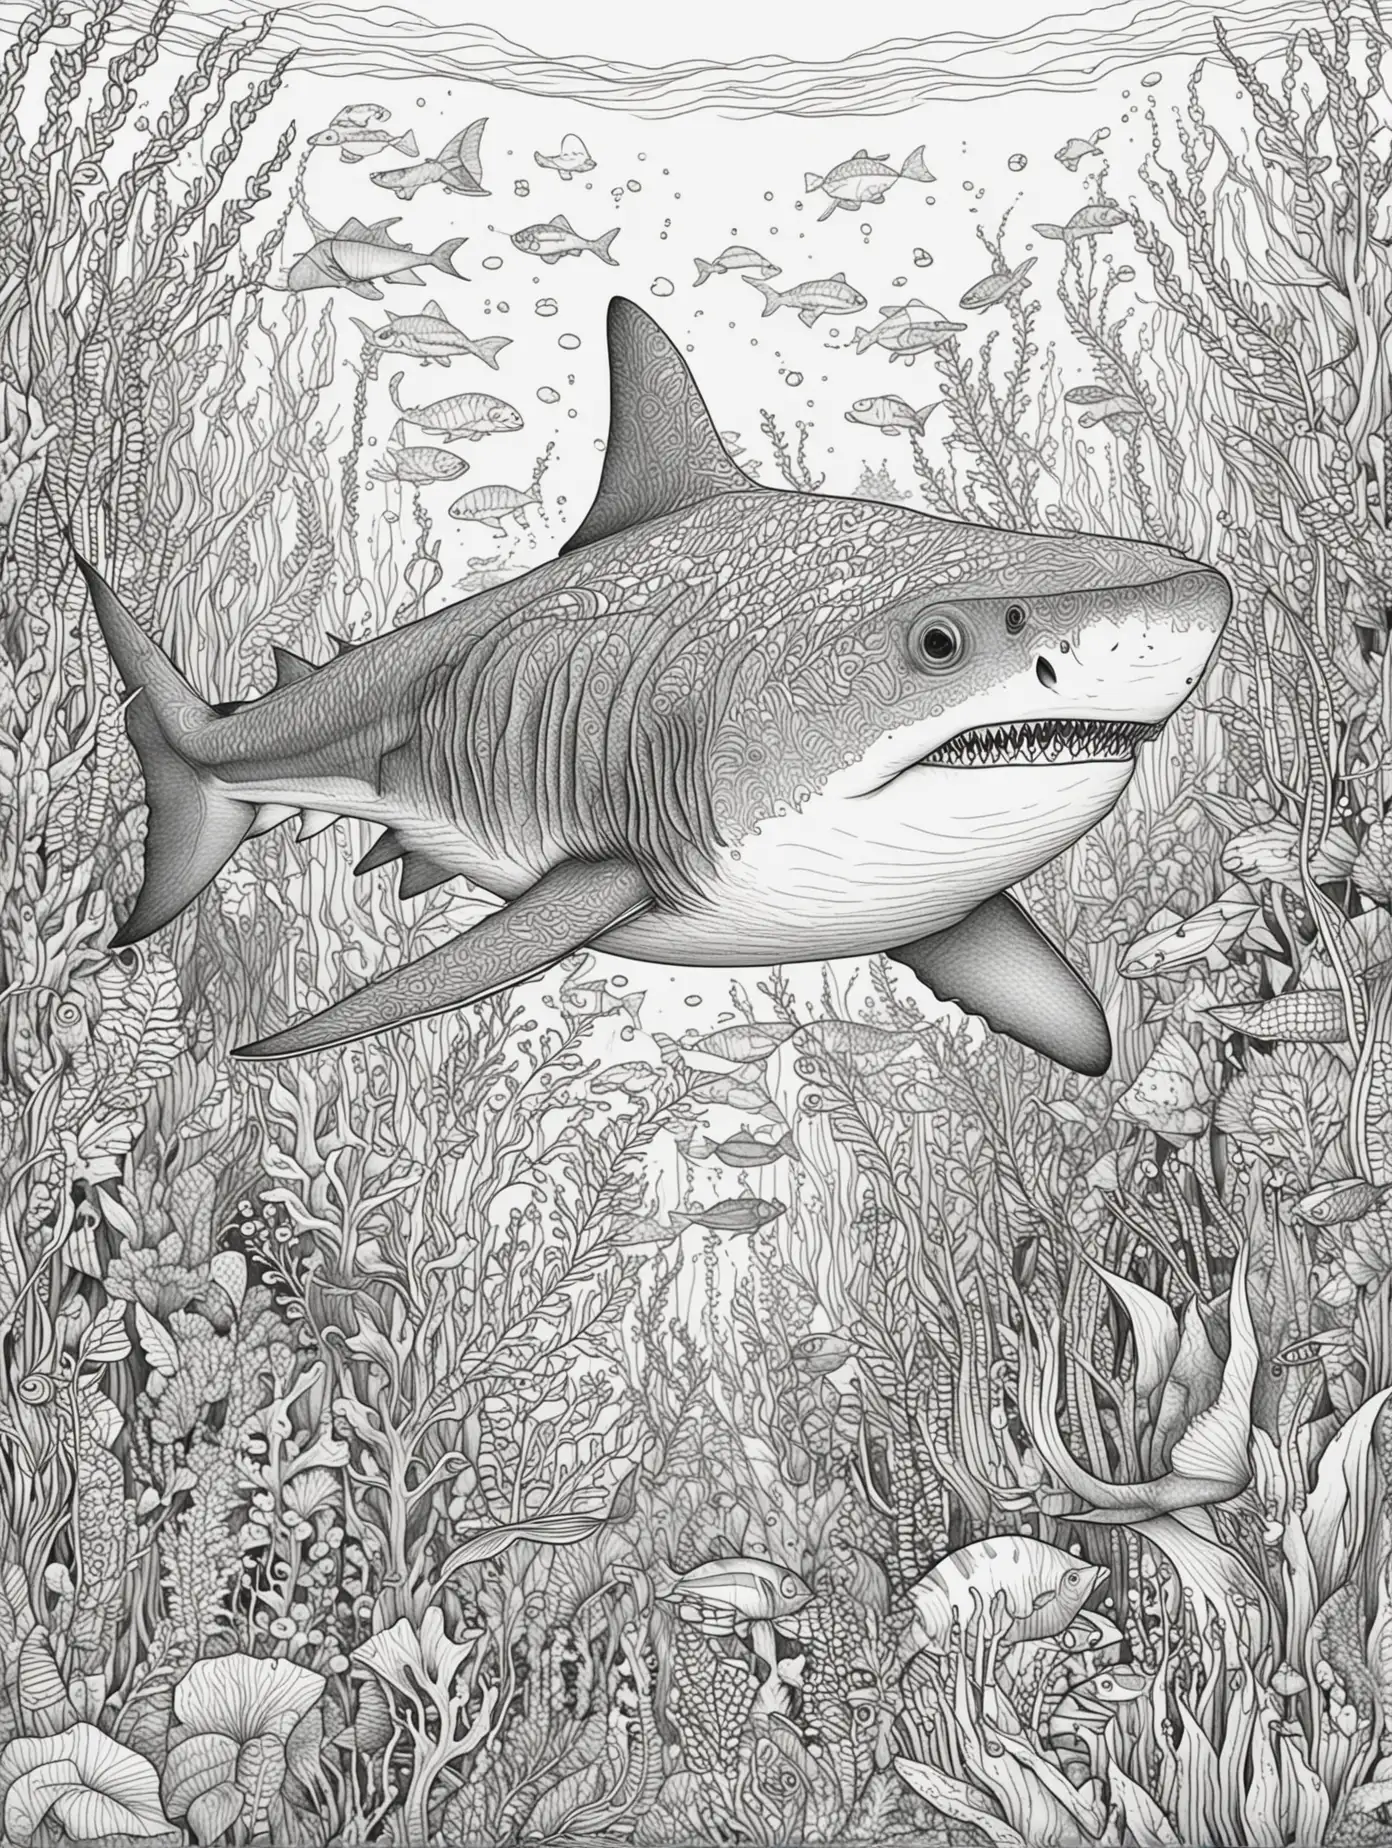 Bitte erstelle eine Malbuchseite für Erwachsene, schwarze feine Linien, zum Thema: Unterwasserwelt, mit 1 Hai